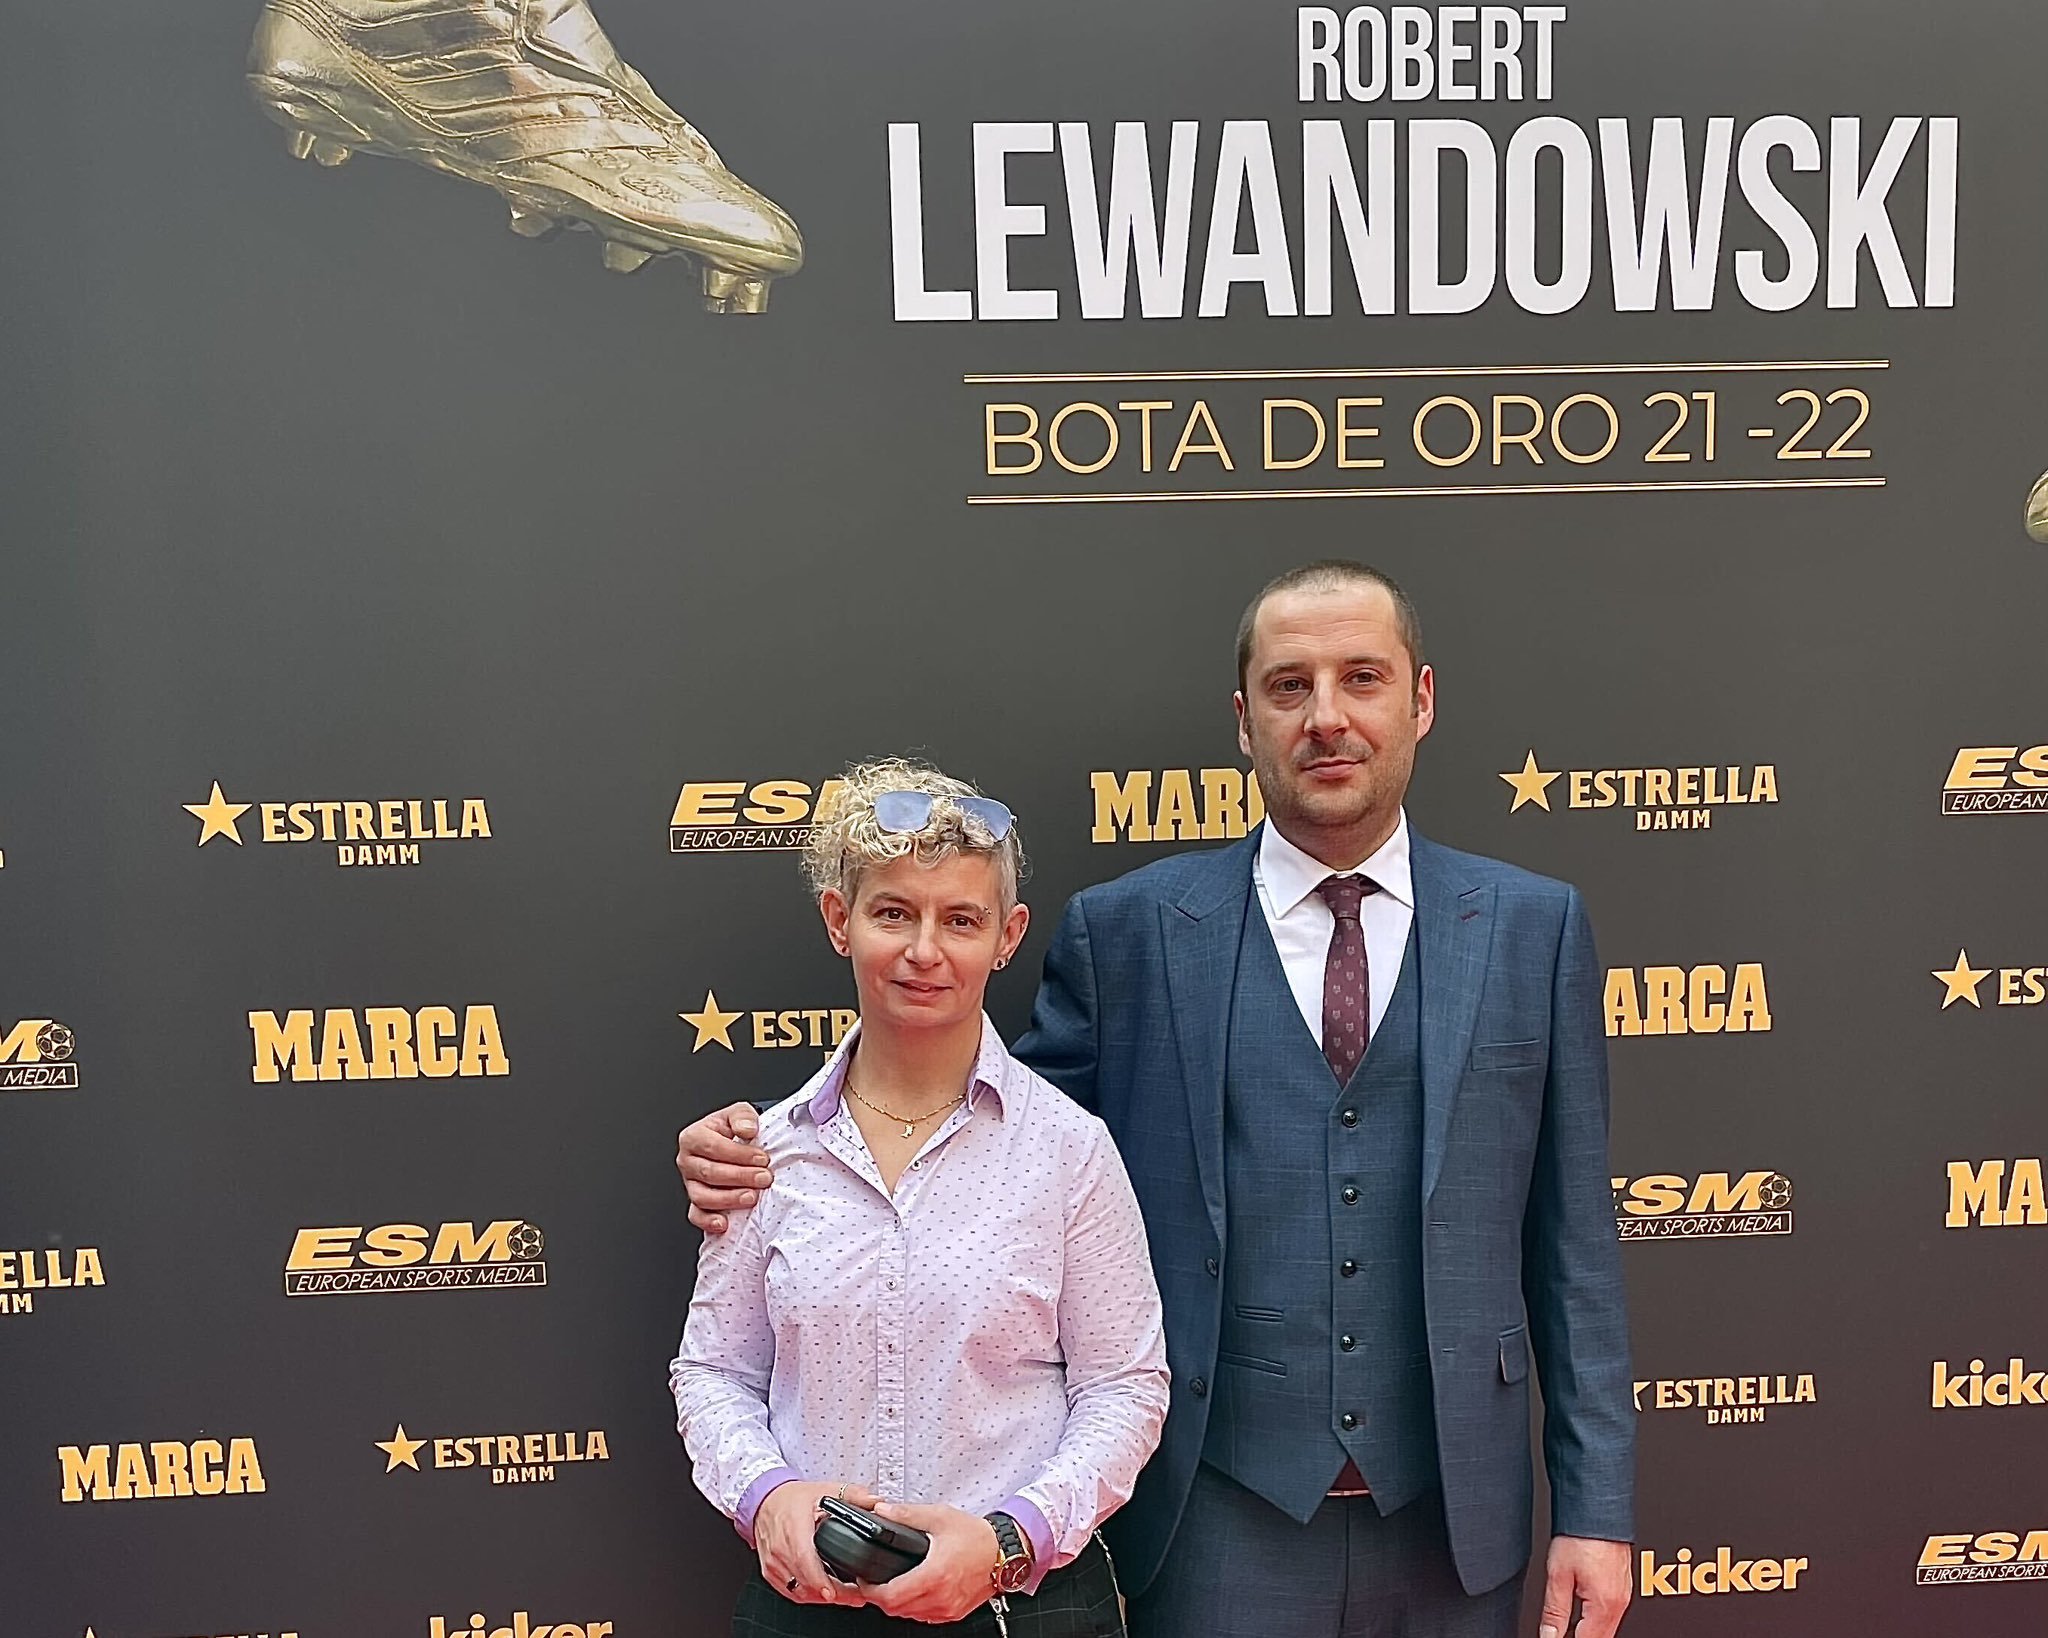 El sueño cumplido del polaco Konrad, de Londres a Barcelona con Lewandowski